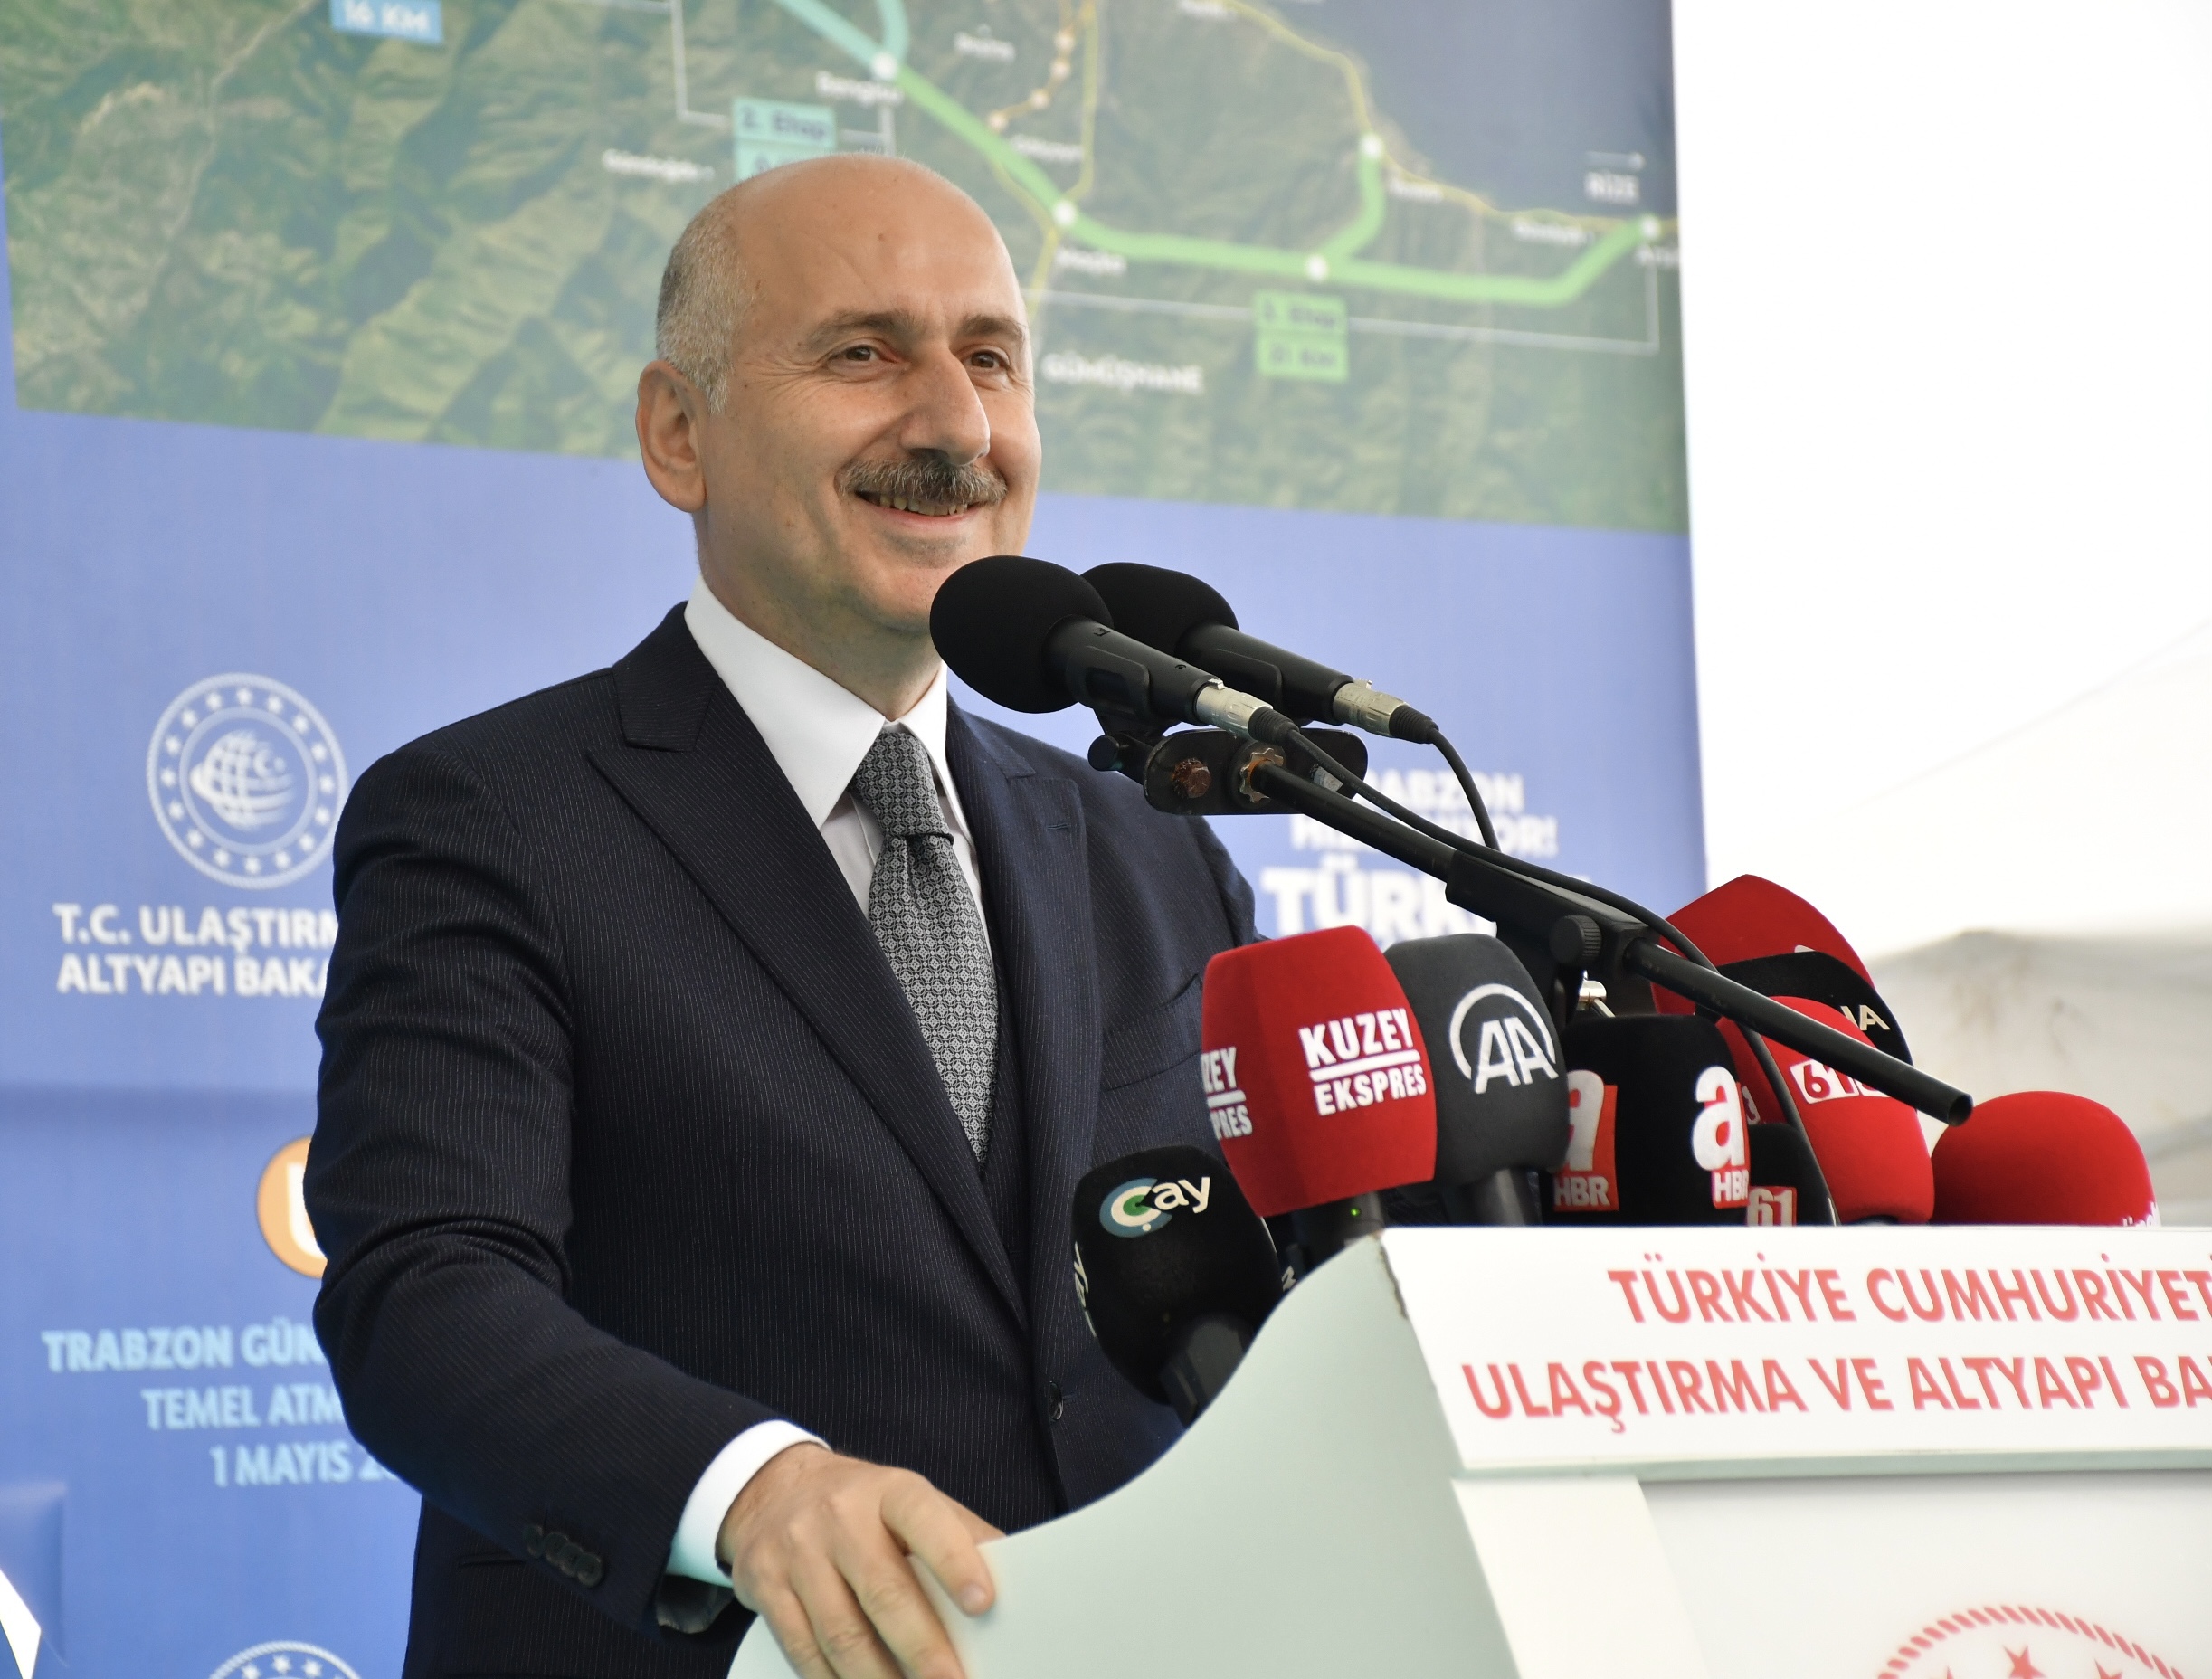 Dışişleri Bakanlığı temsilciliği Trabzon'da hizmete başlıyor